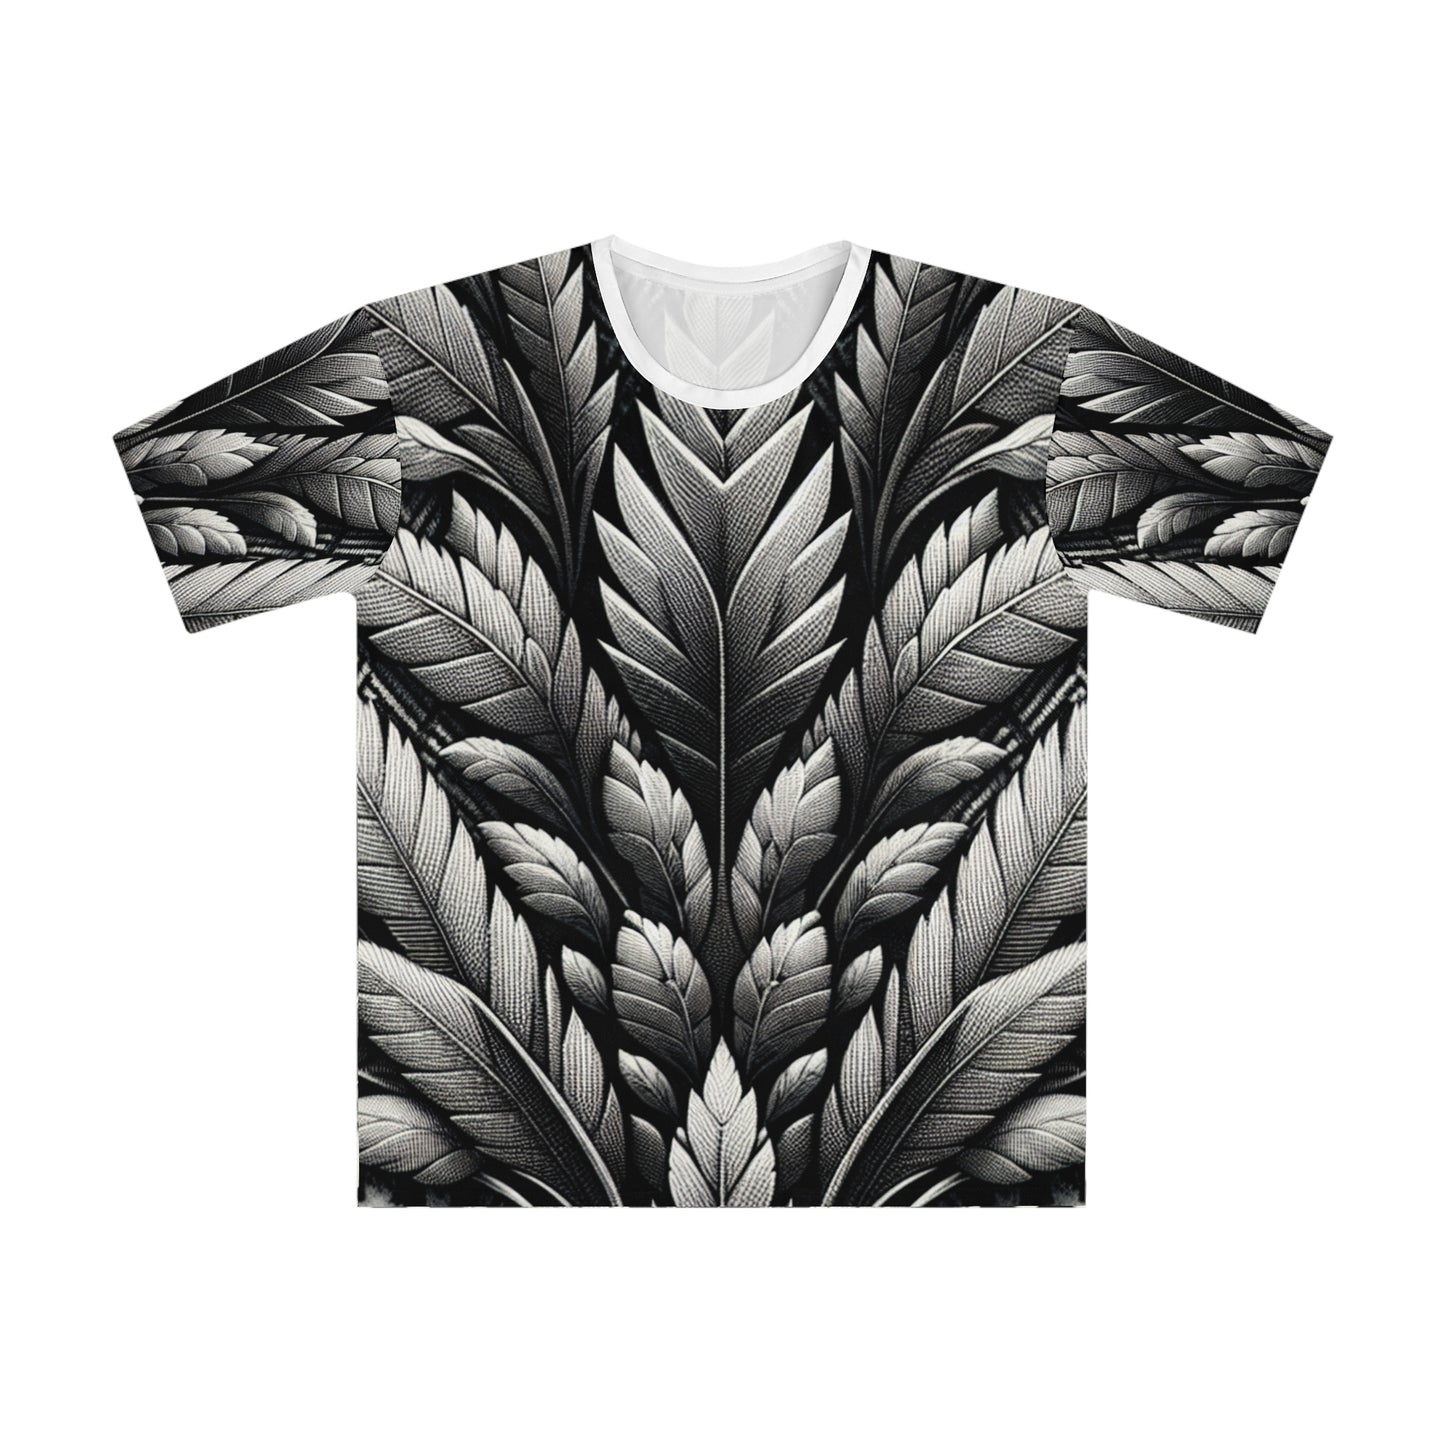 Vangelis - Men's T-shirt